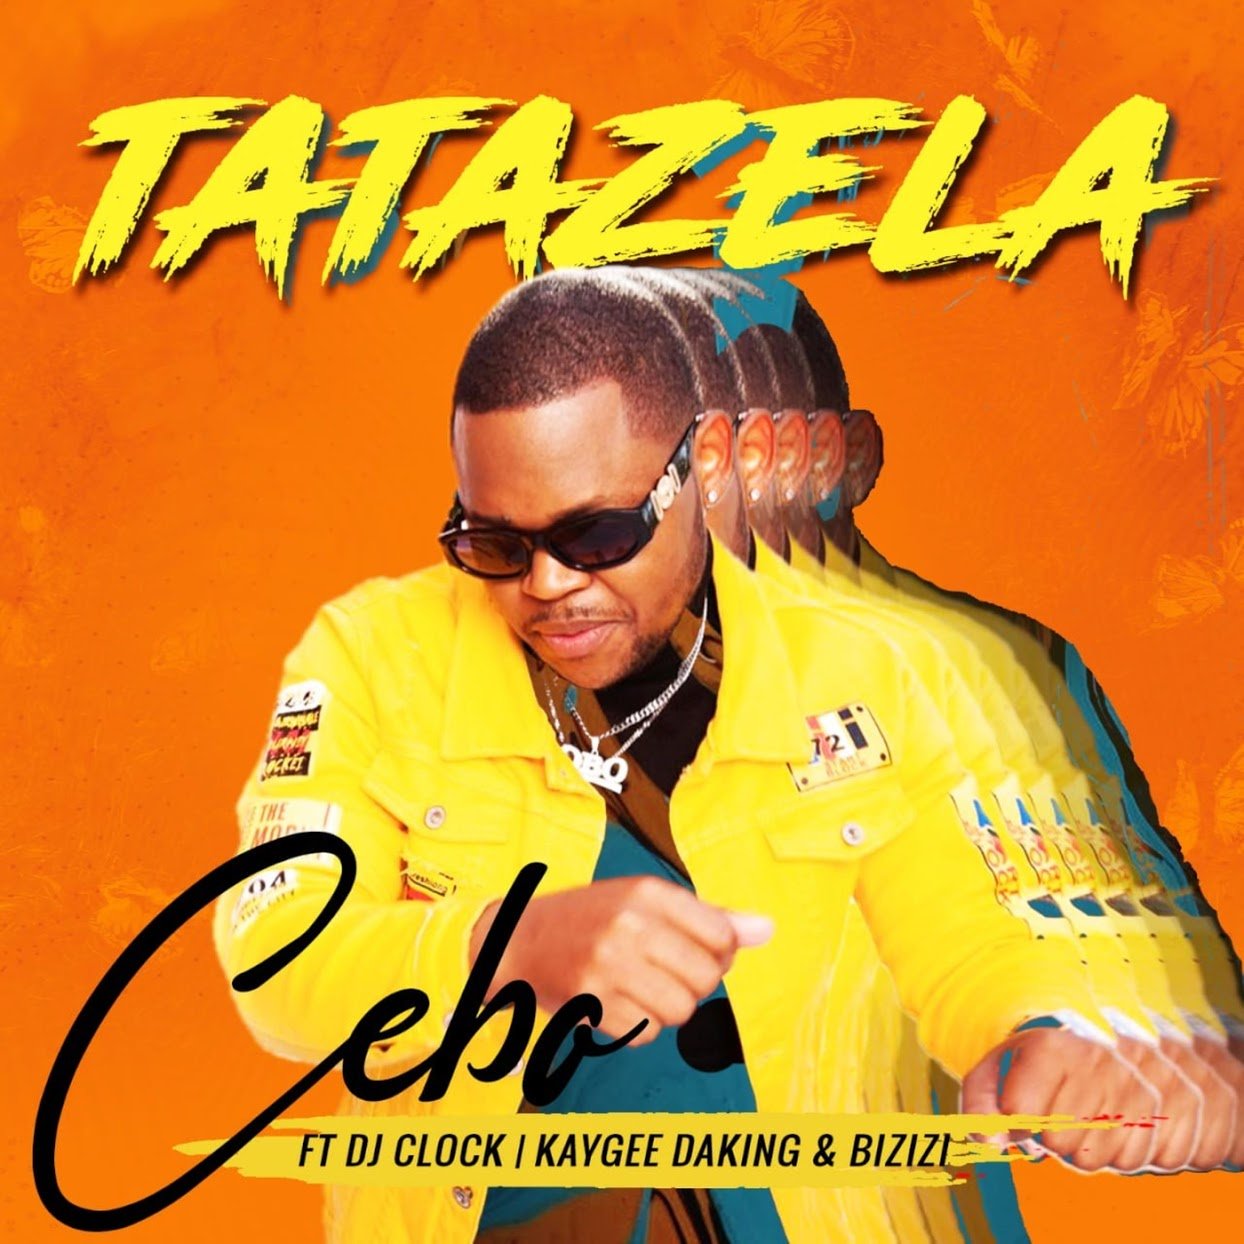 Cebo feat. DJ Clock, KayGee DaKing & Bizizi - Tatazela